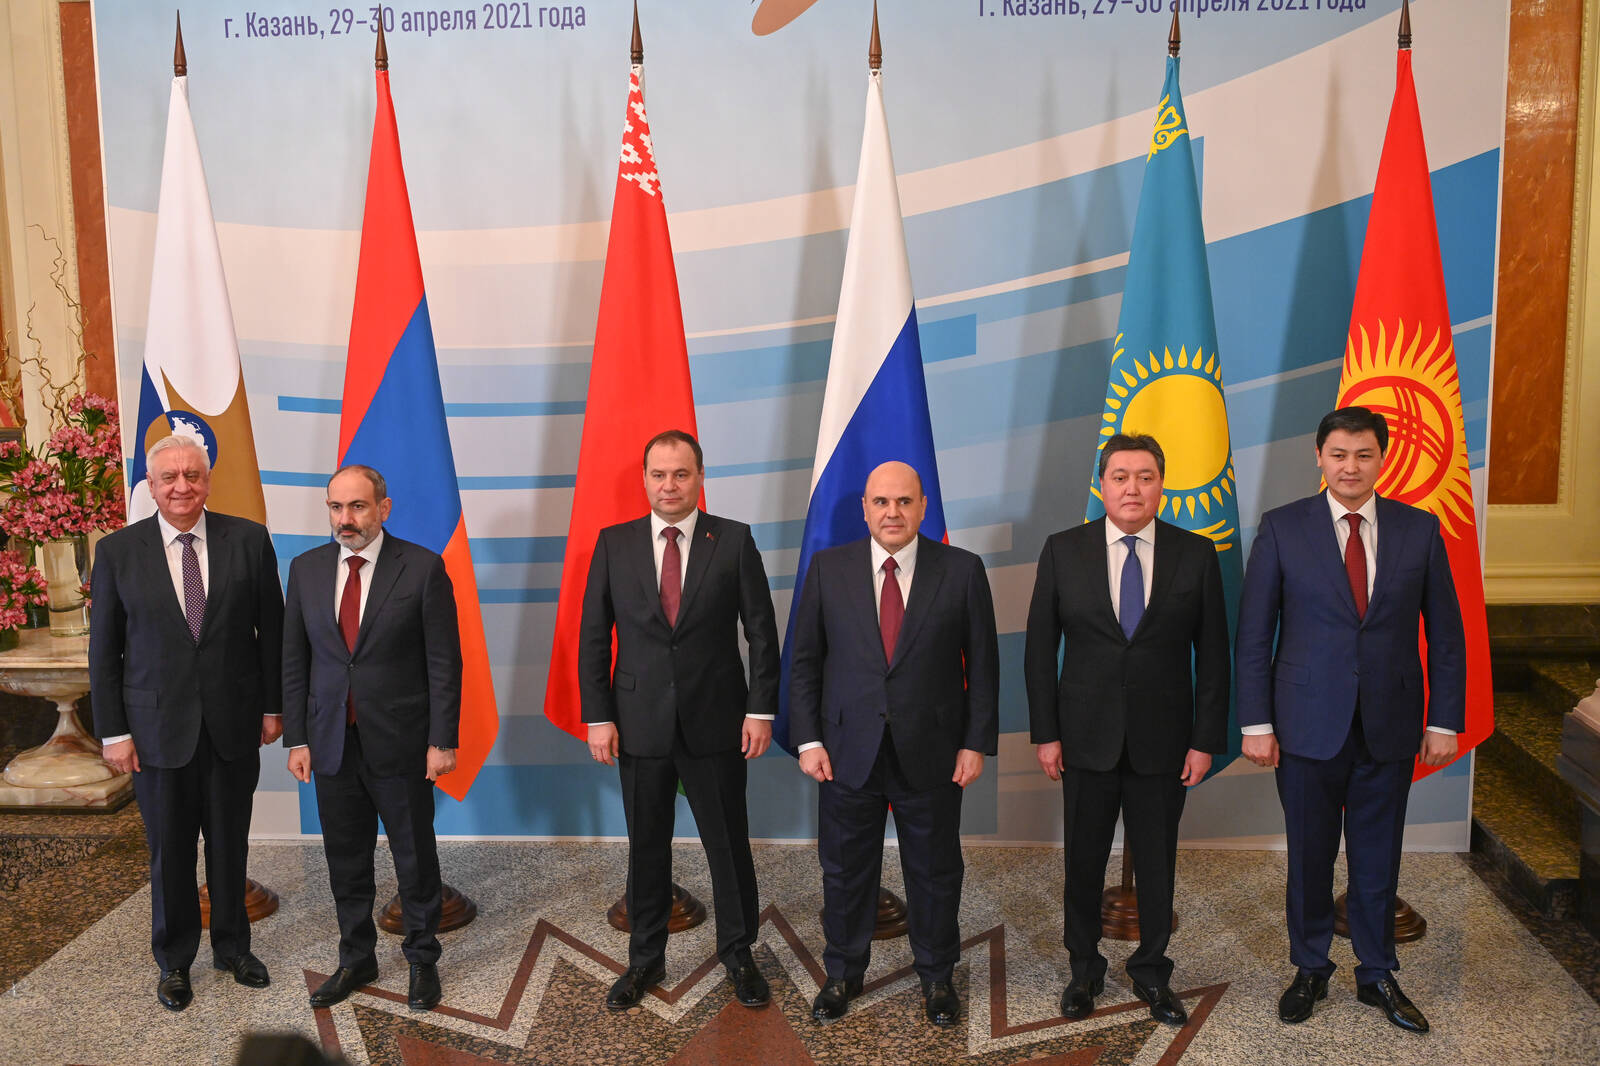 Большая евразийская встреча в Казани: проблемы космоса и миротворчество